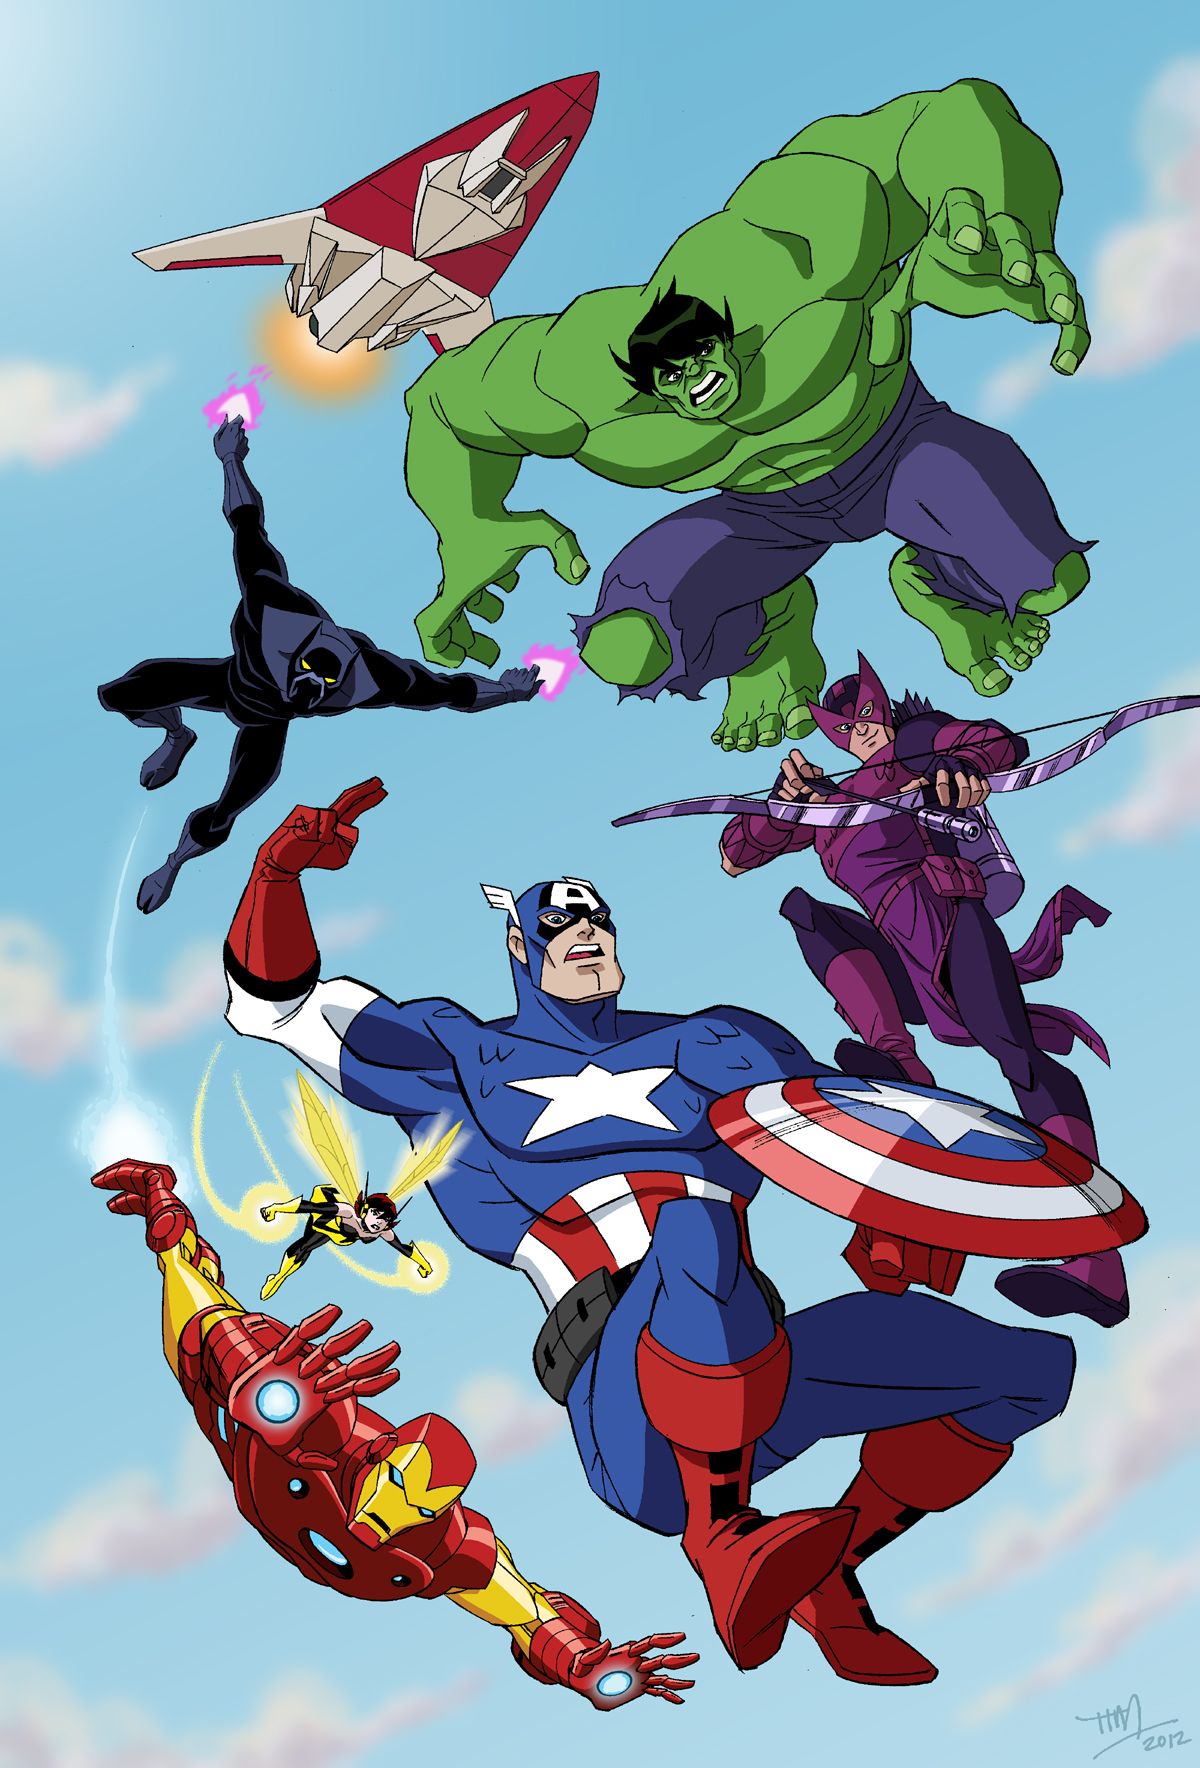 Avengers EMH Wallpaper. The Avengers